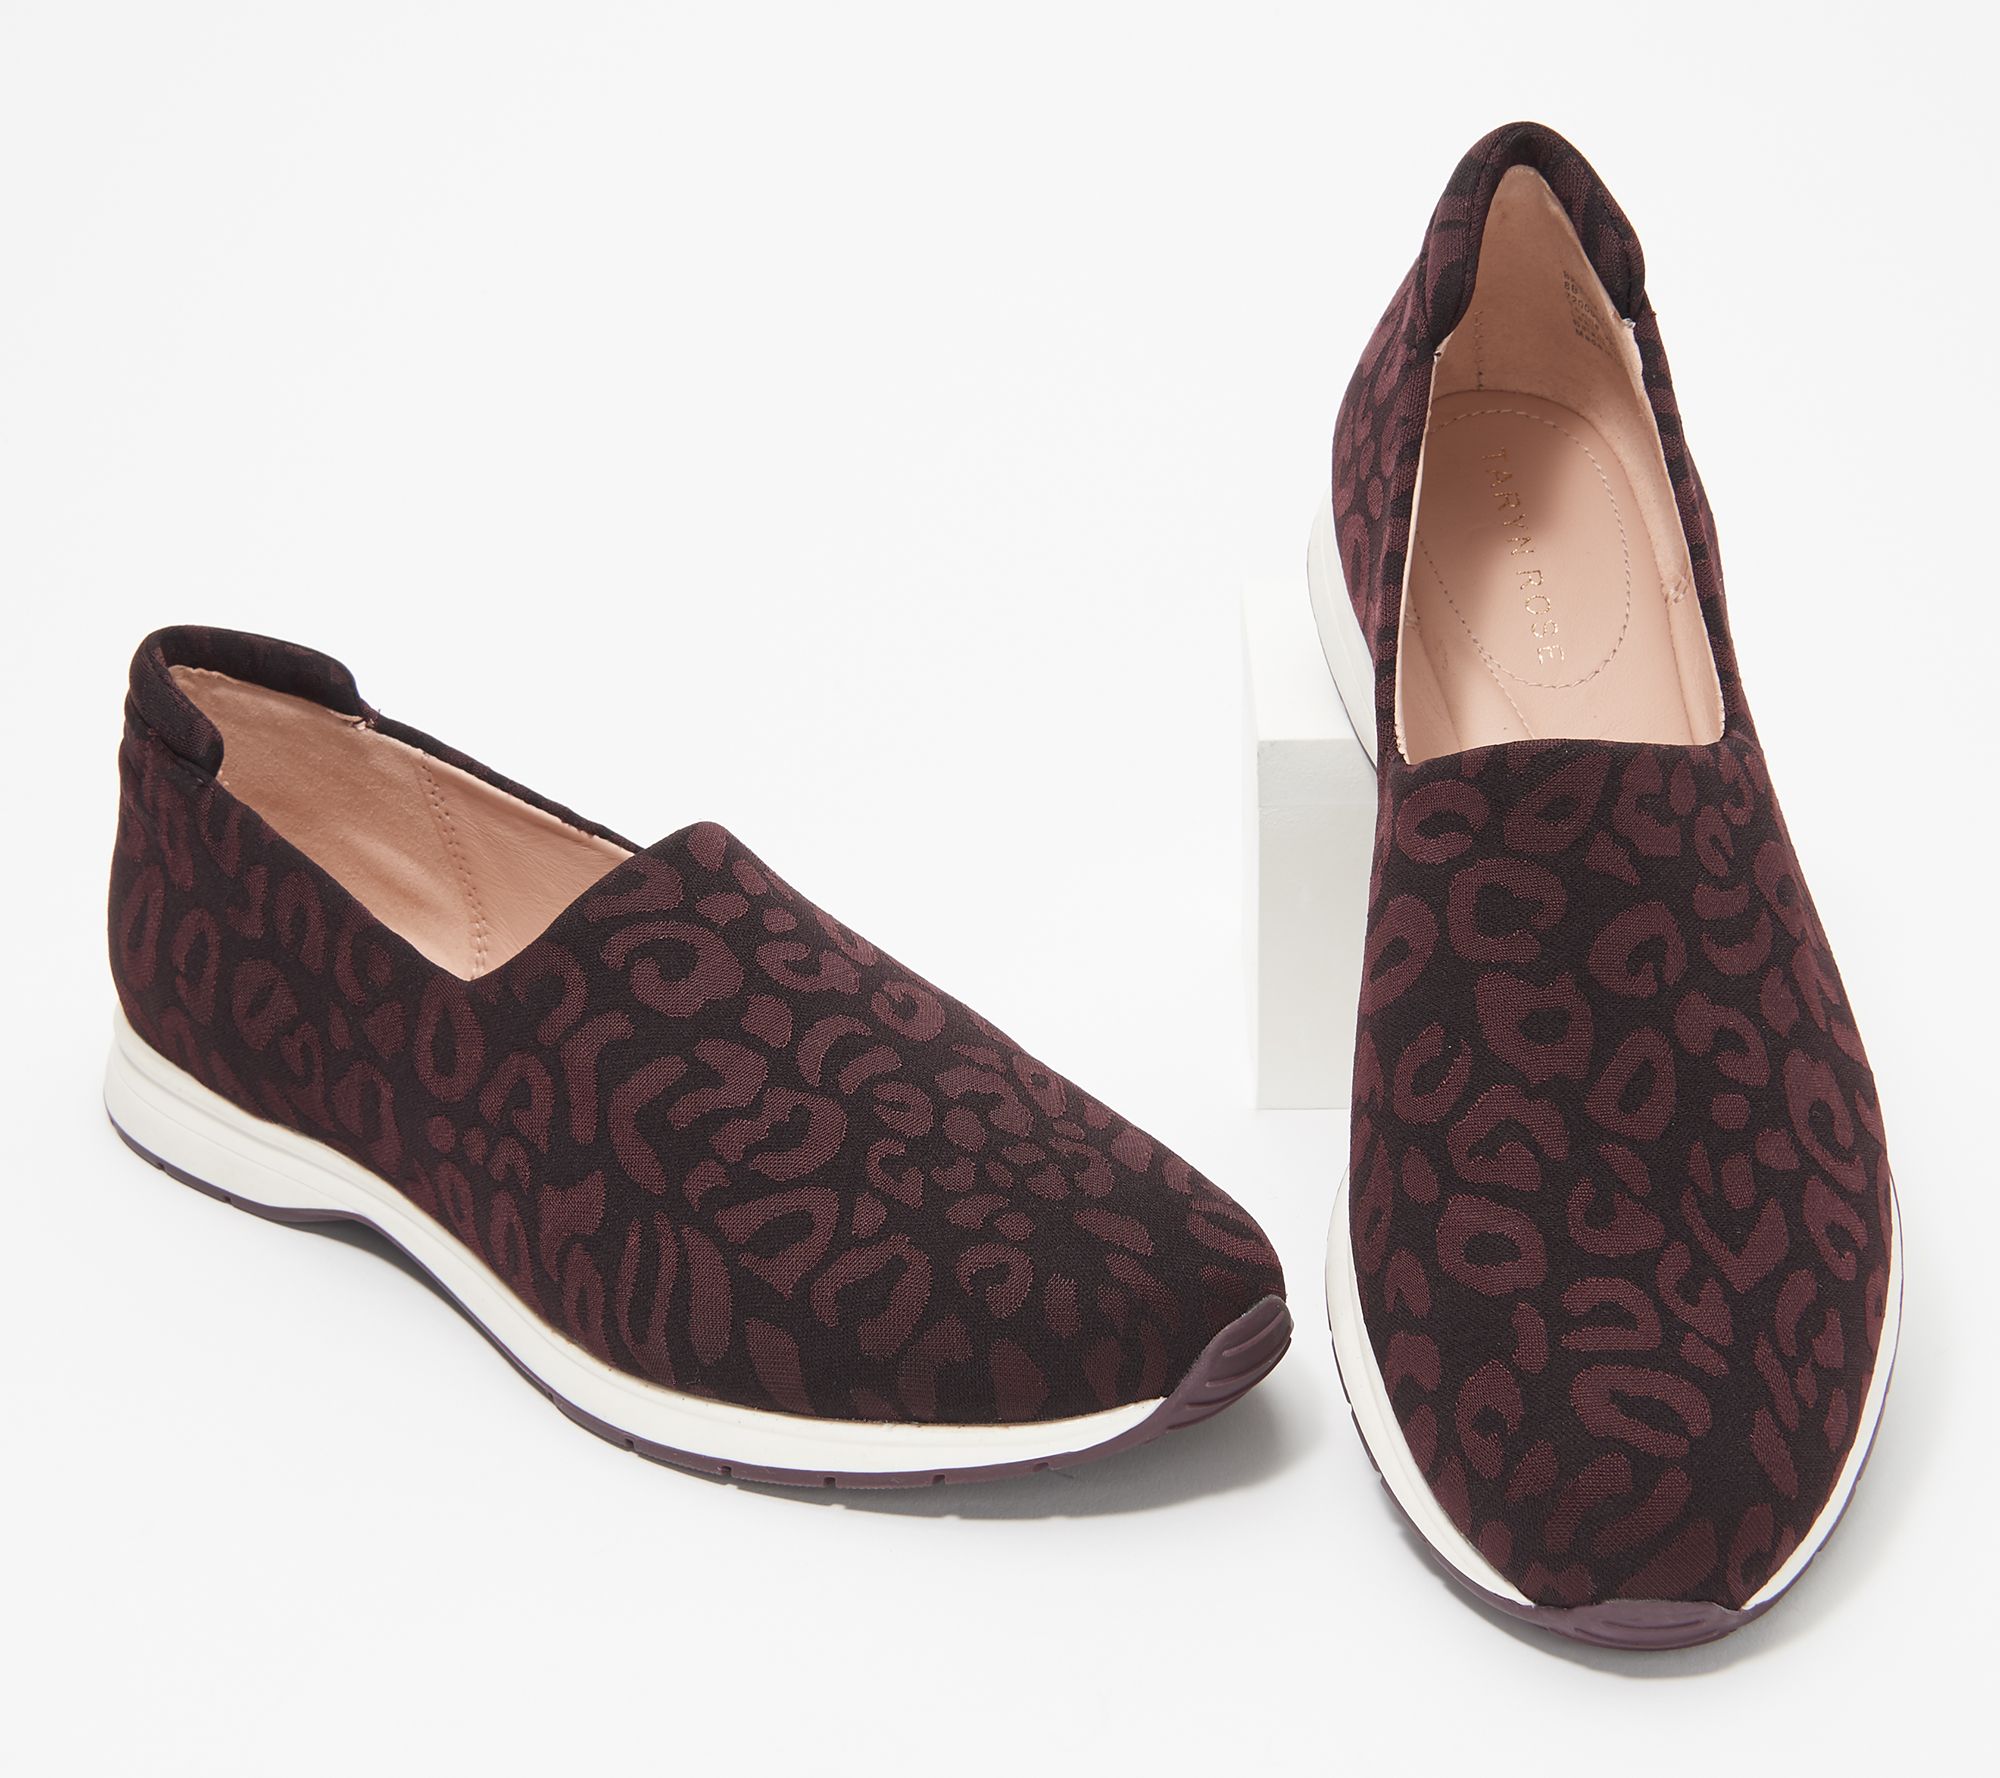 Taryn Rose Leopard Print Slip On Shoes - Briella - QVC.com